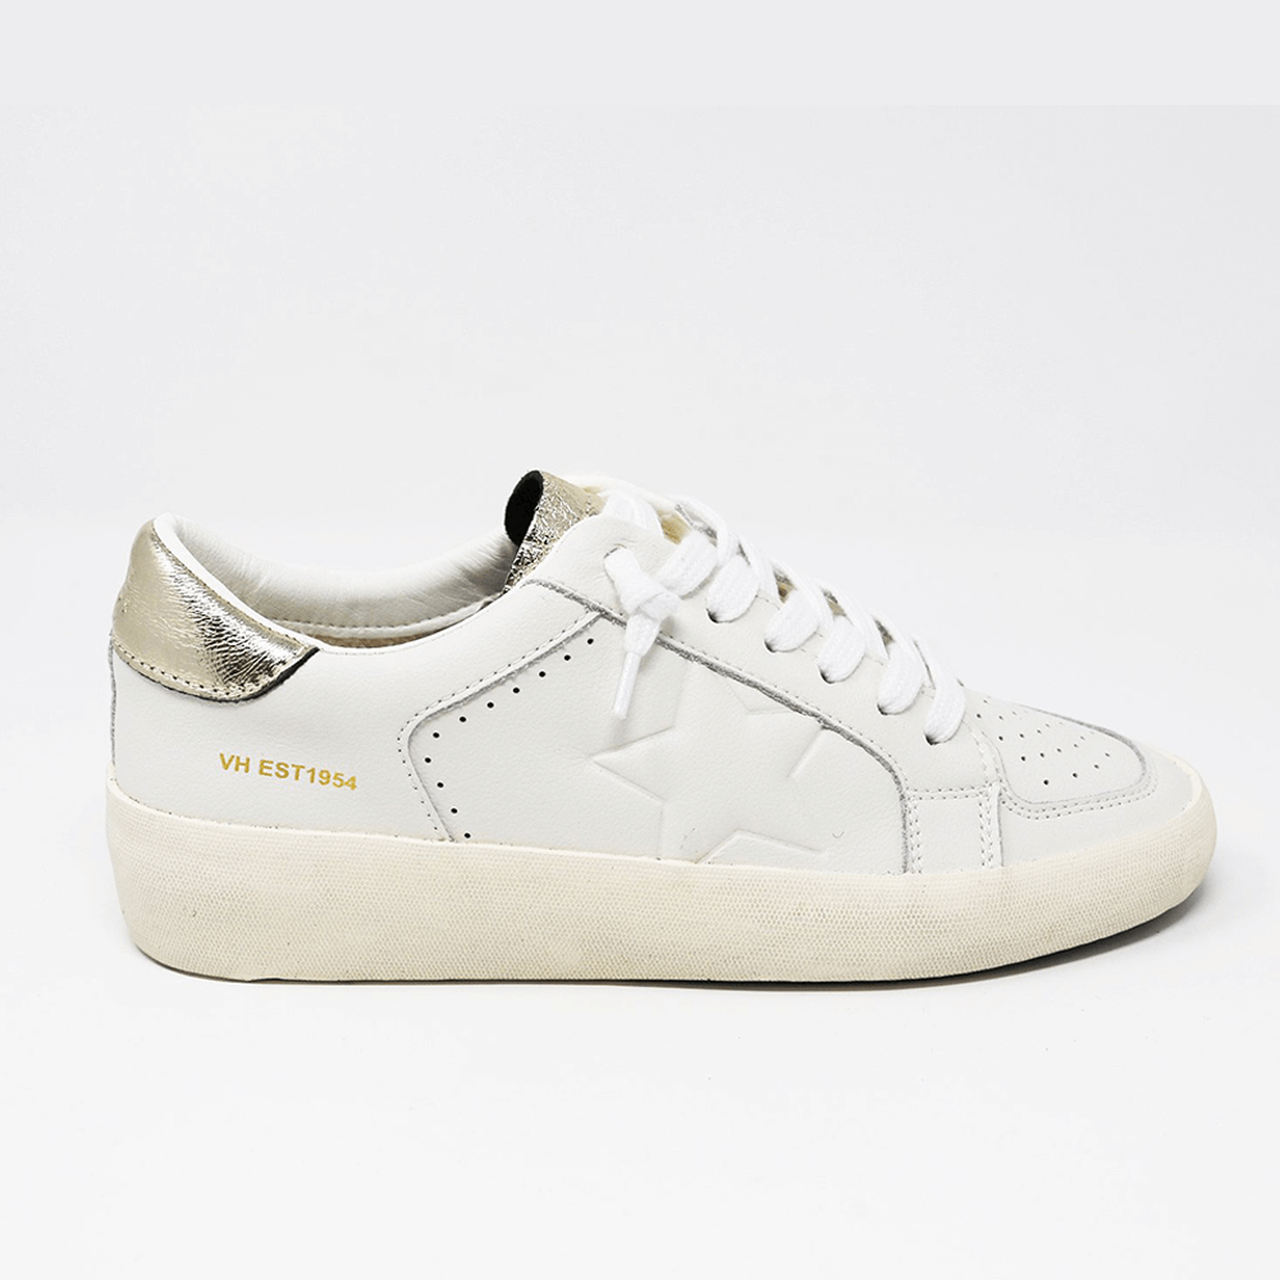 Reflex White Croco Sneaker